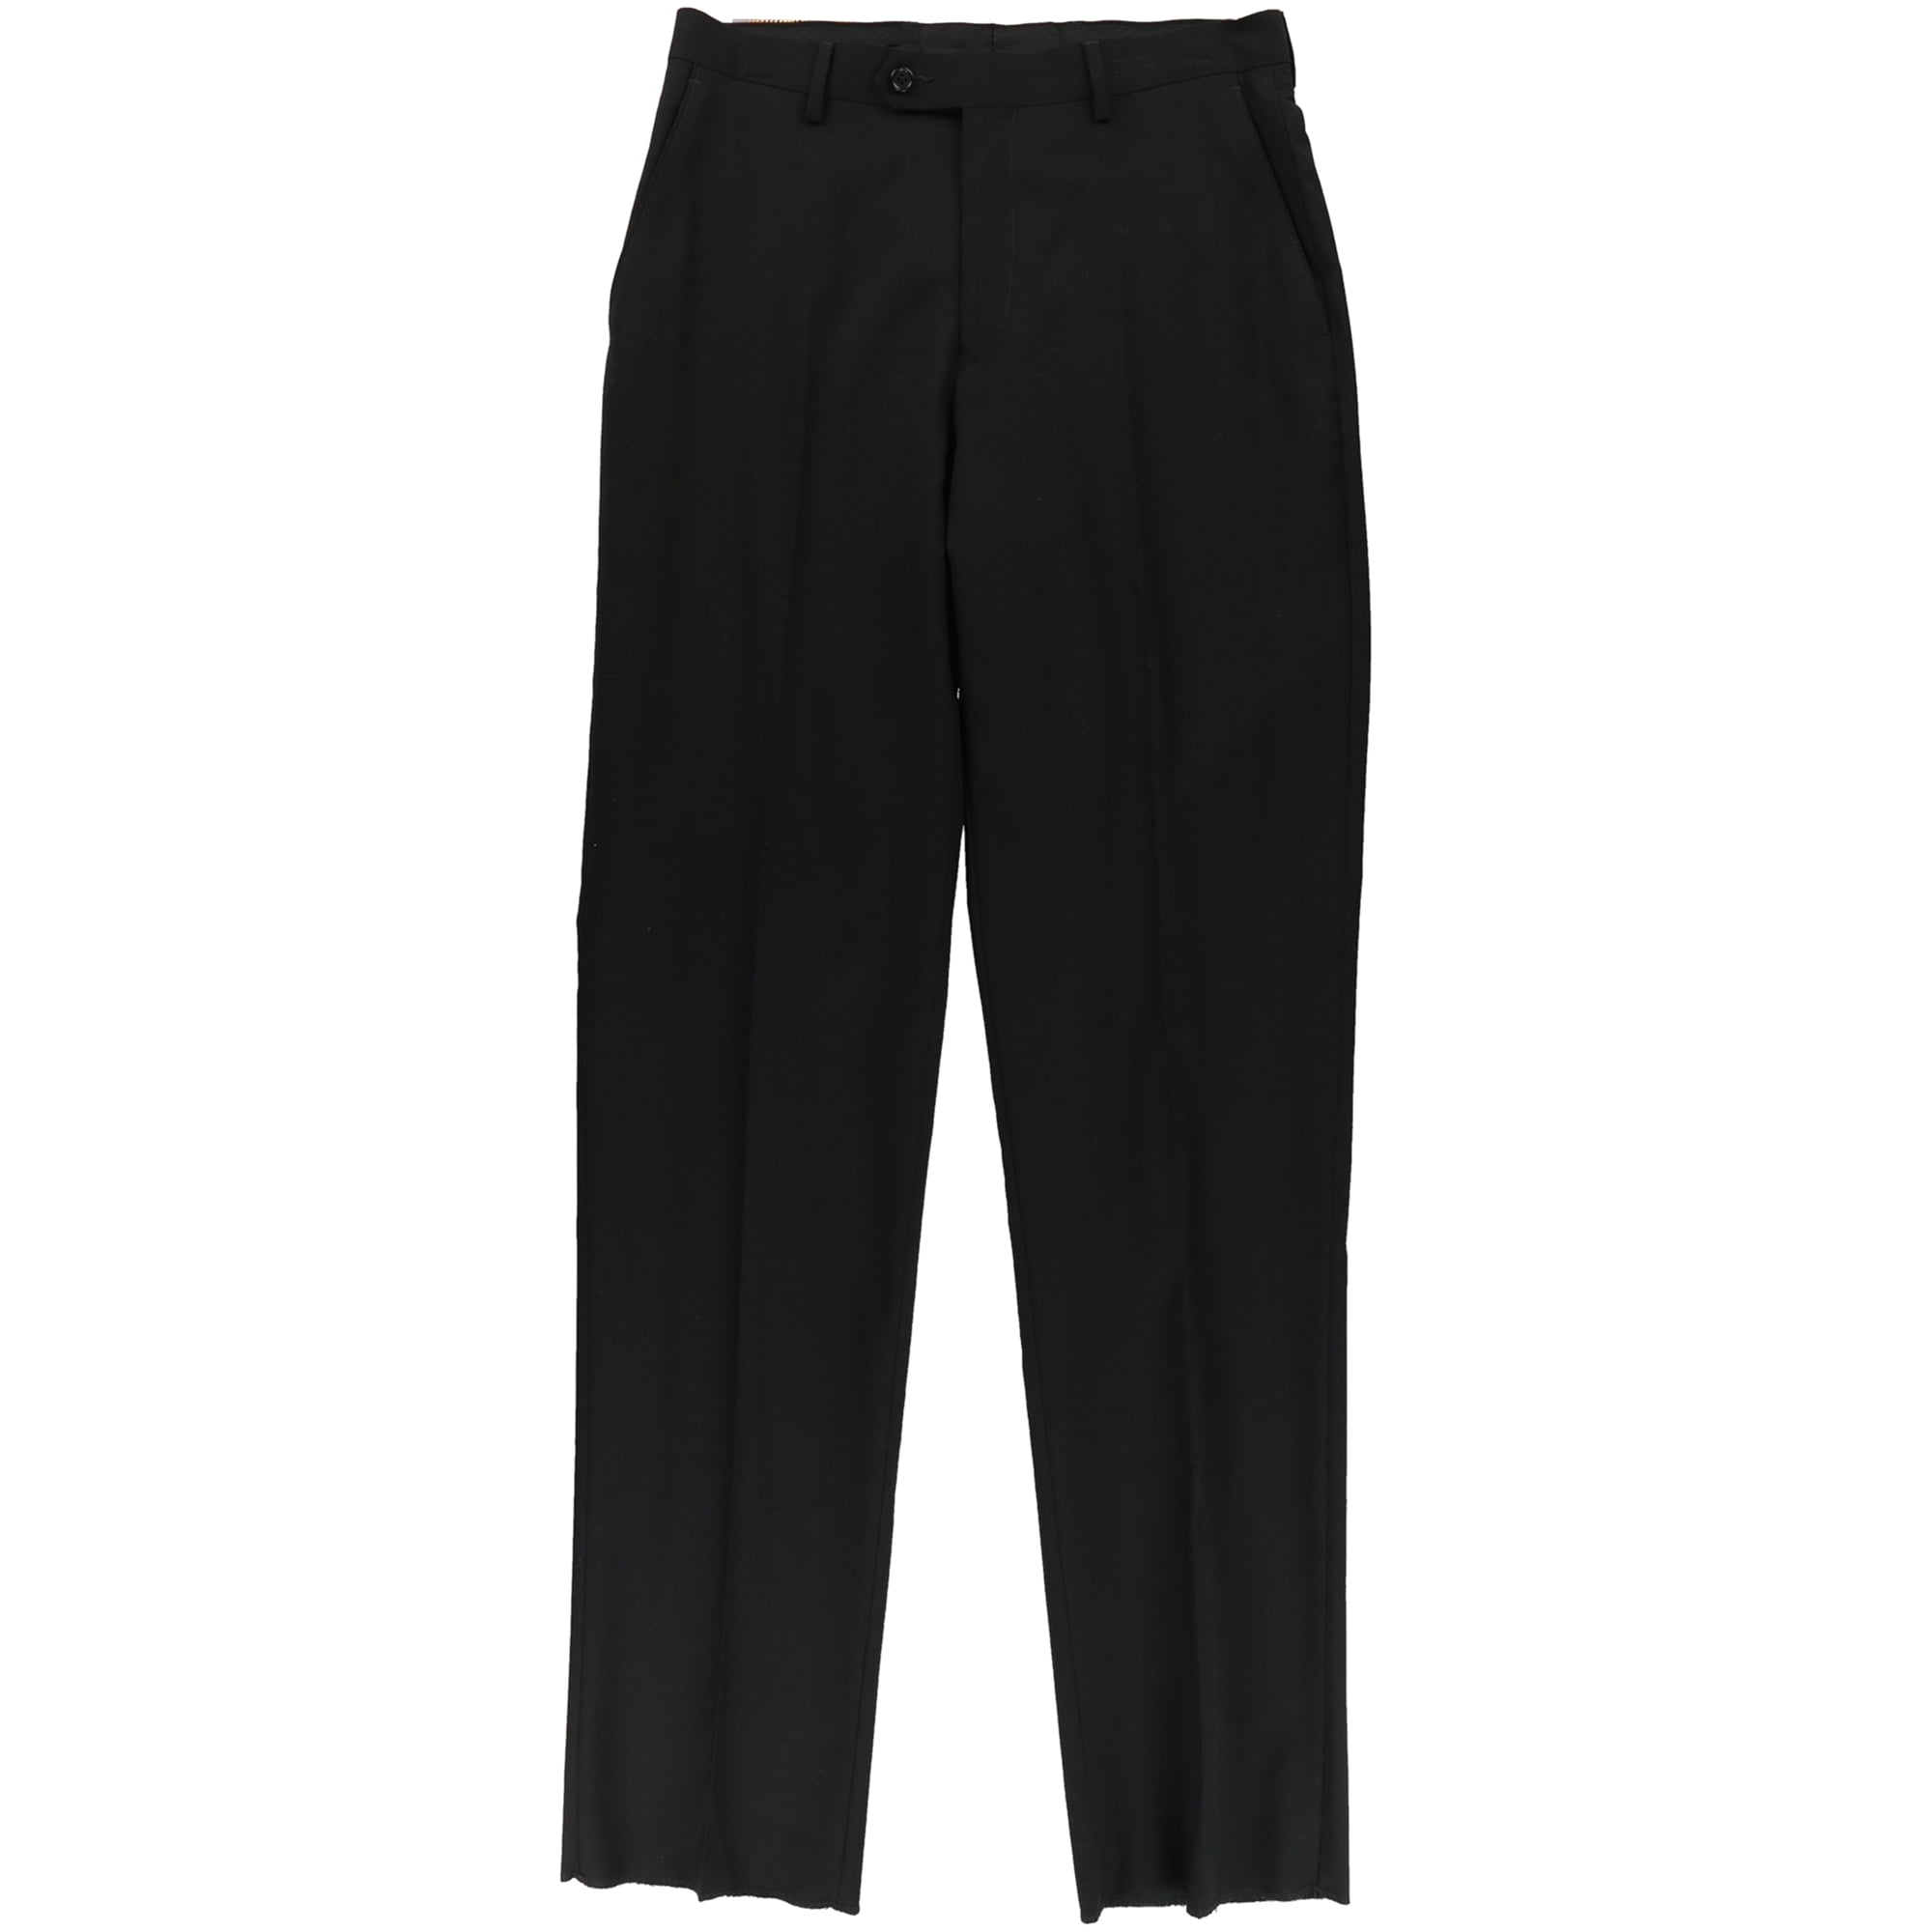 Michael Kors Mens Solid Dress Pants Slacks, Black, 29W x 36L - Walmart.com